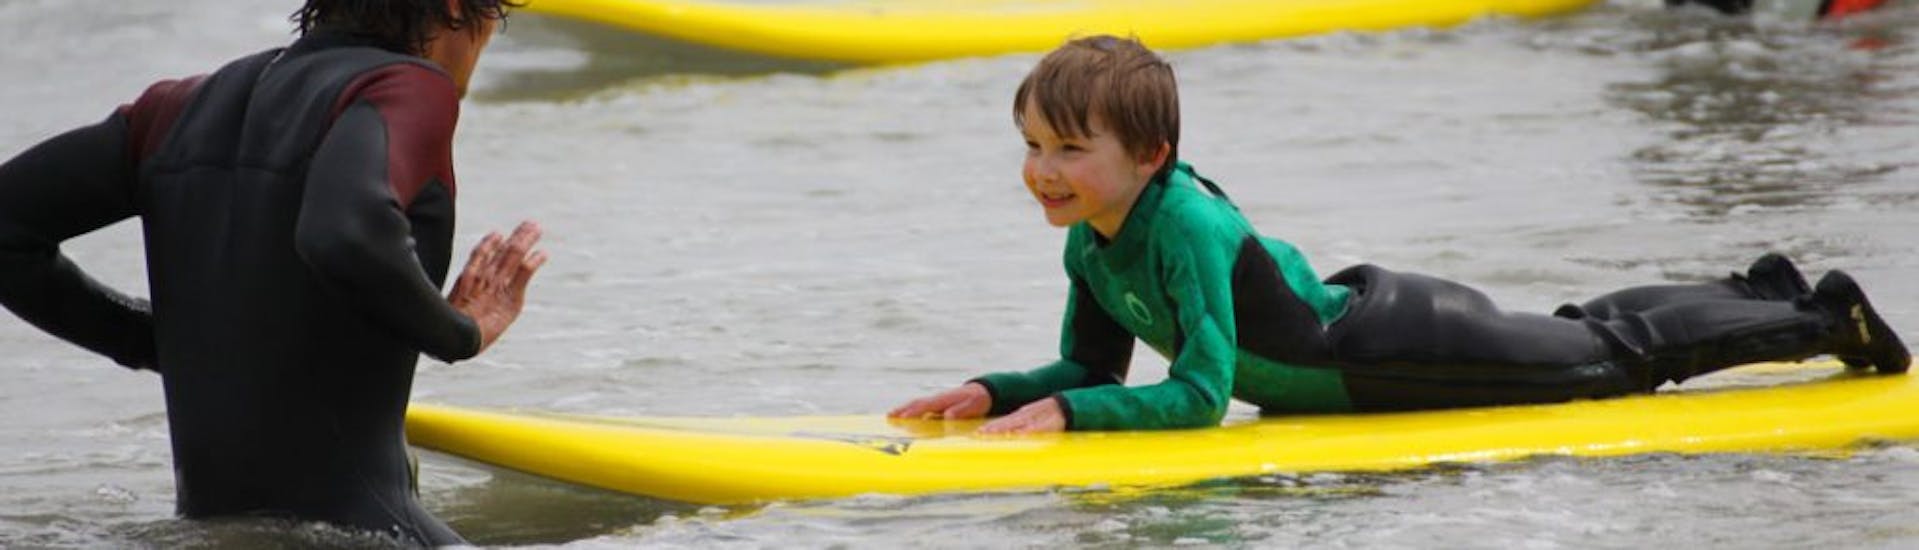 Garçon apprenant à surfer durant son Cours privés de surf (dès 5 ans) dans le Pays de Brest avec Minou Surf School Pays de Brest.